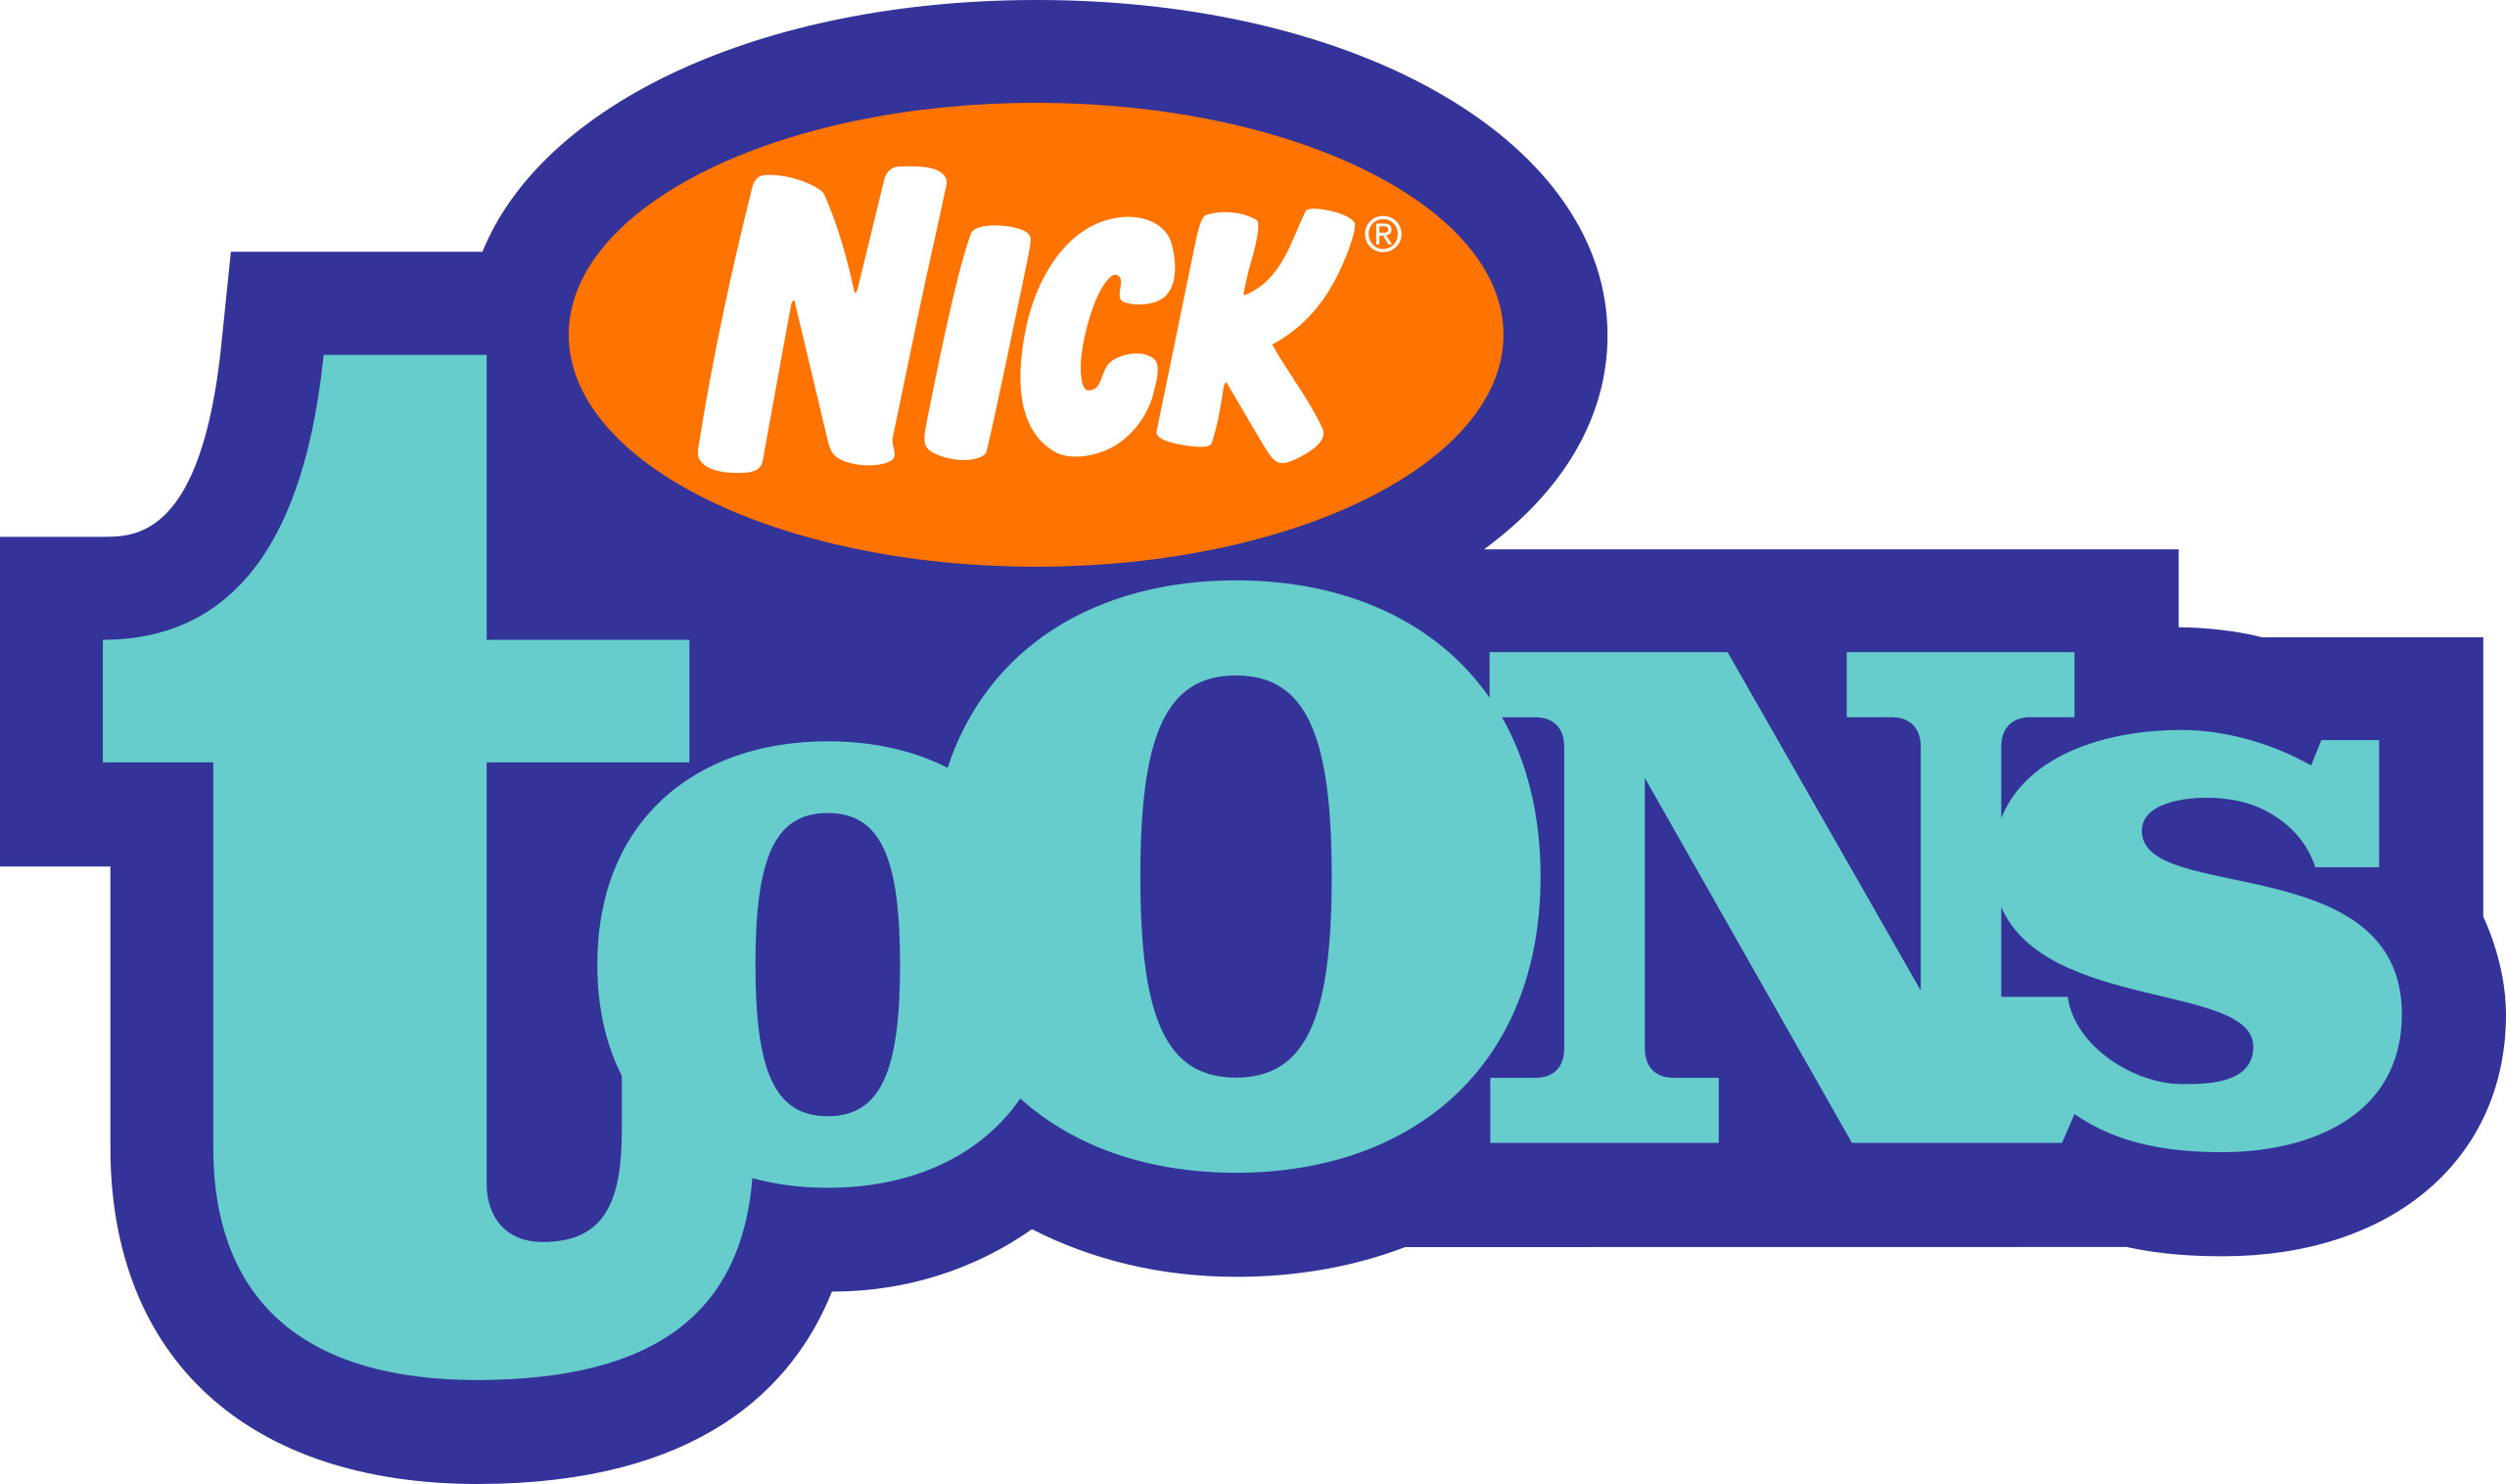 Nicktoons. Канал Nicktoons. Nicktoons logo. Nicktoons Network логотип. Irish tv channel